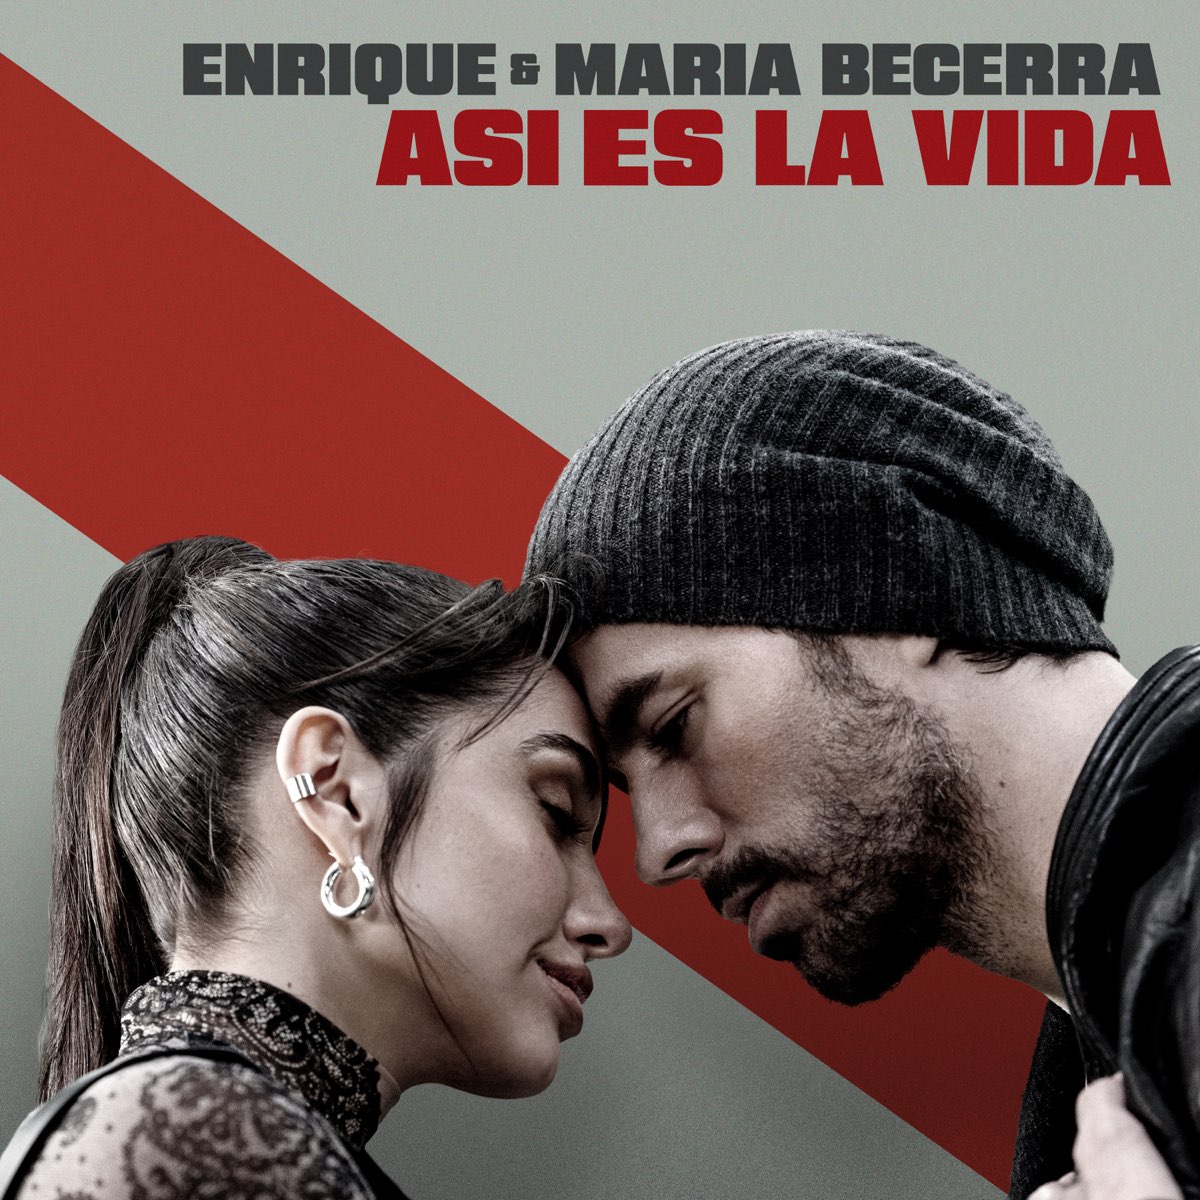 ‎ASI ES LA VIDA - Single - Album by Enrique Iglesias & Maria Becerra ...